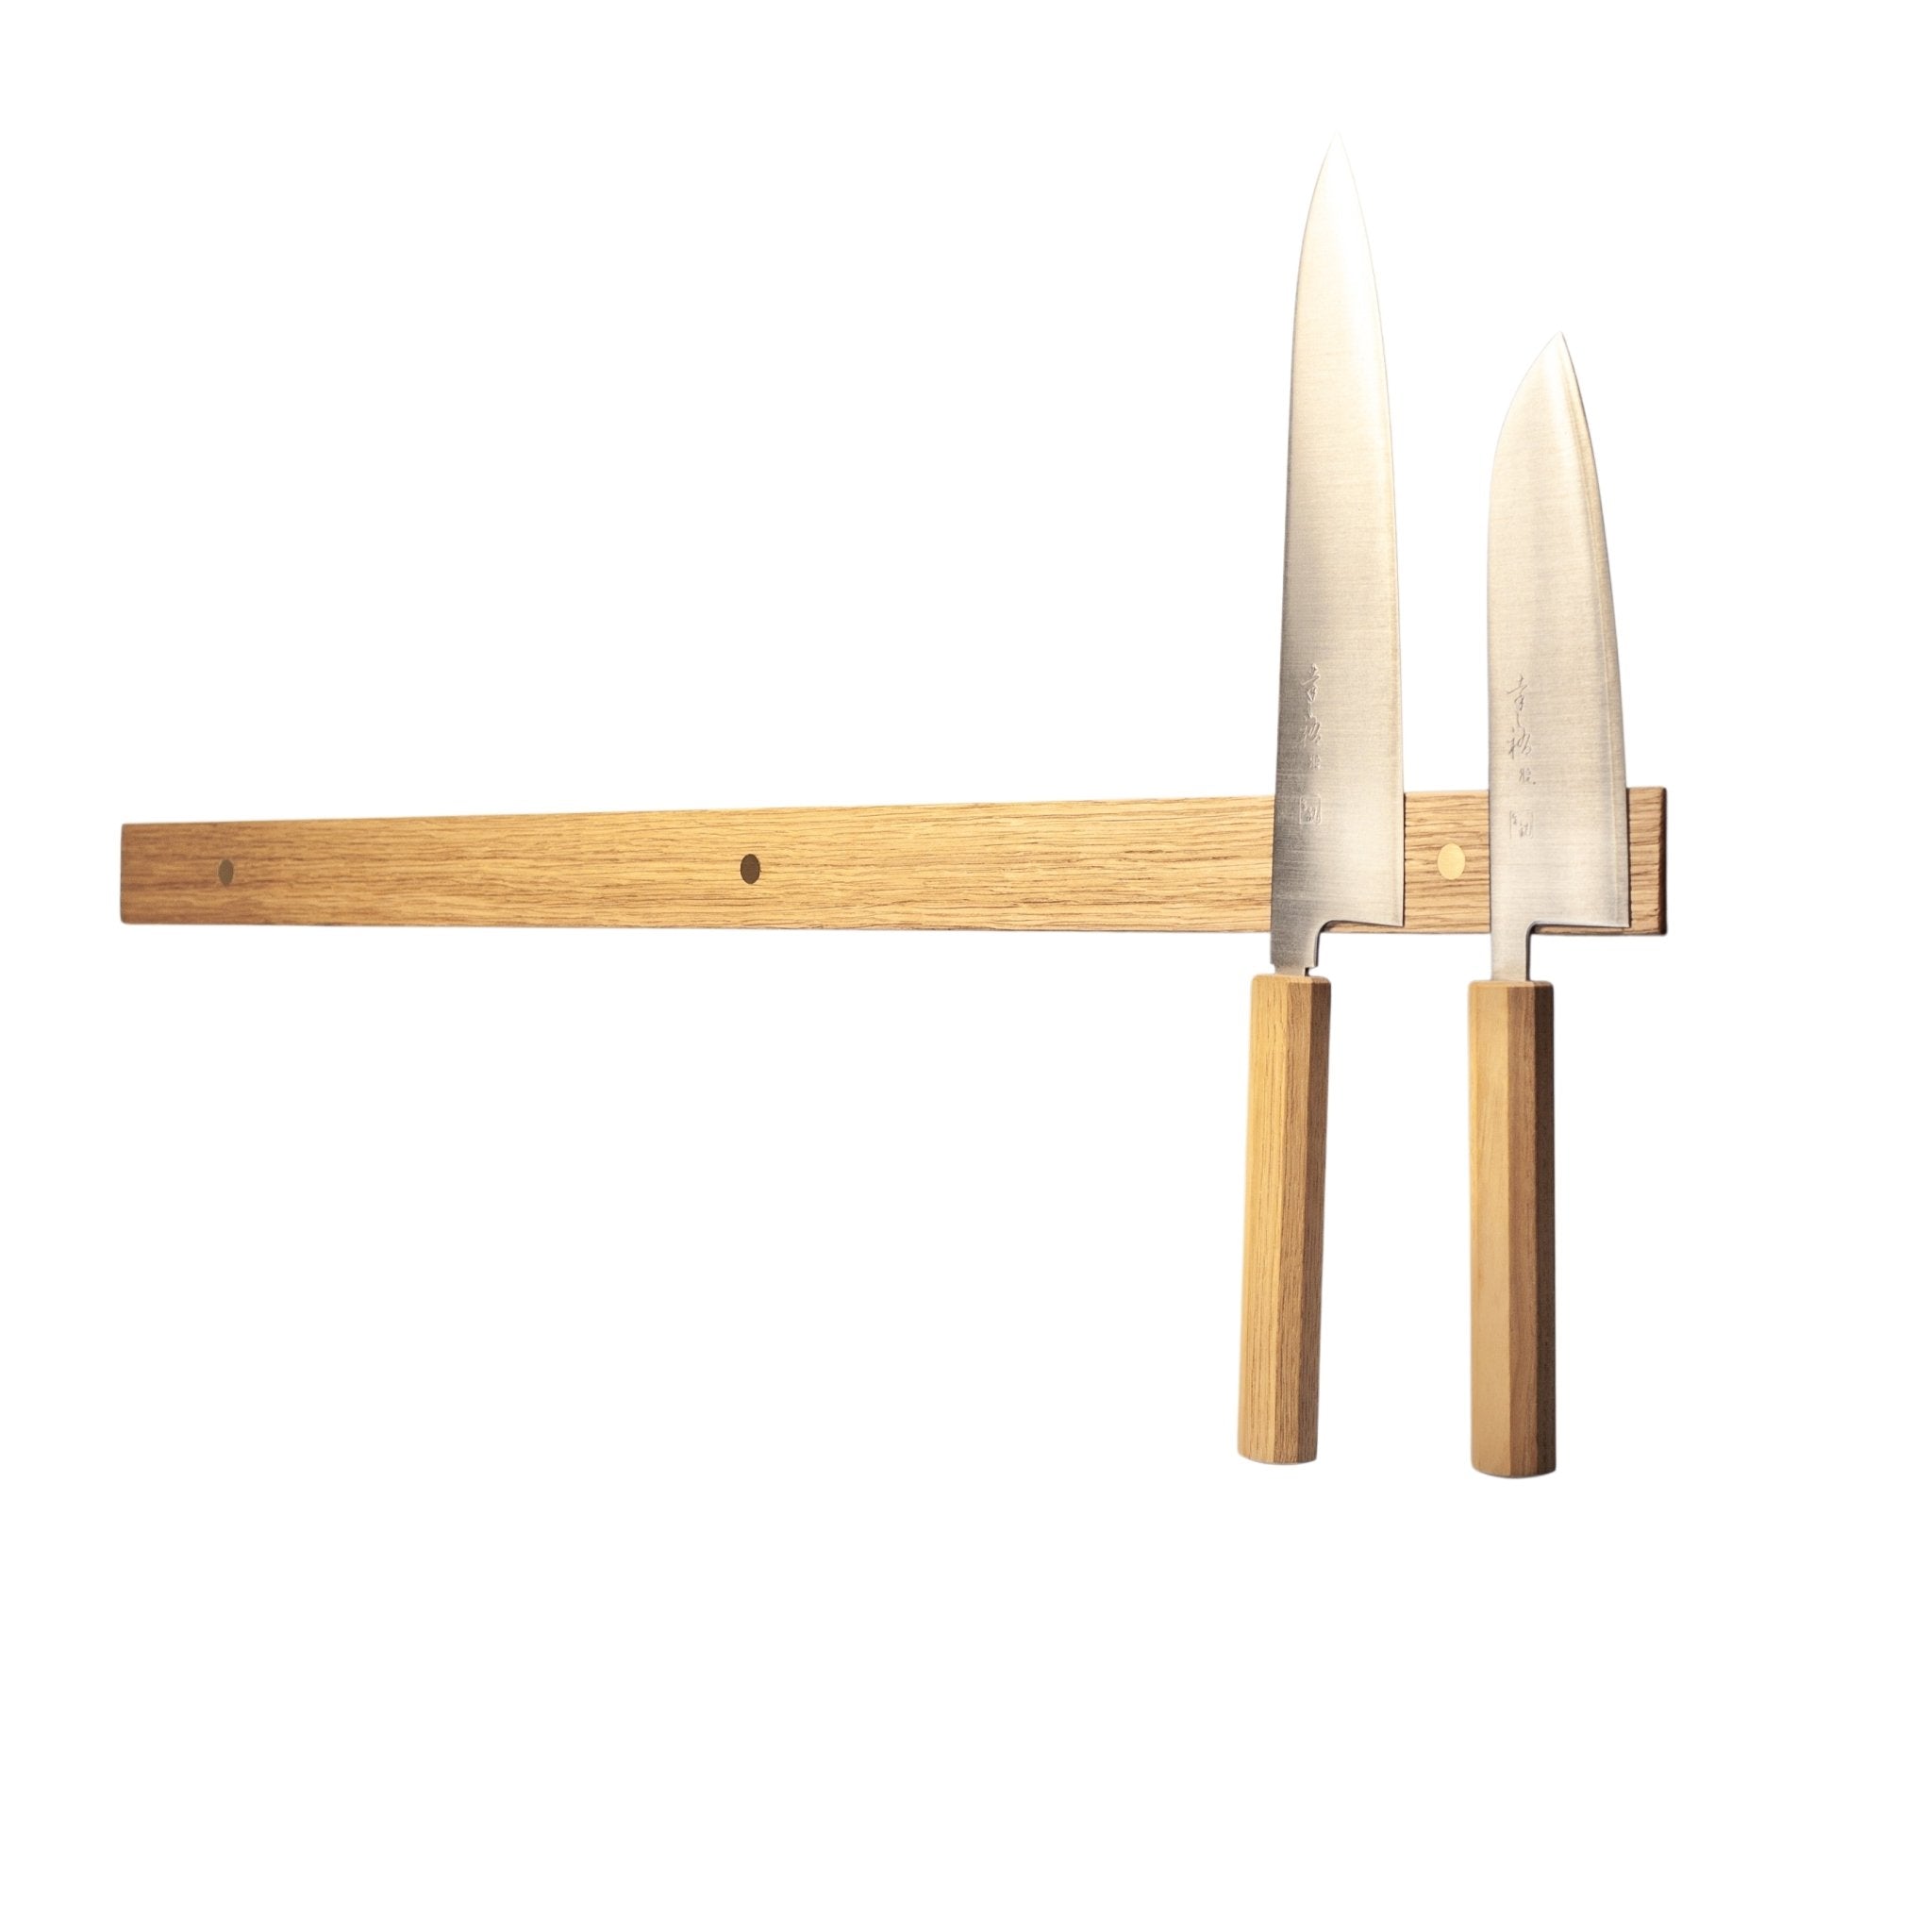 Rune-Jakobsen Woodworks 'Knifeboard Classic' dyb knivmagnet_5 by Rune-Jakobsen Design